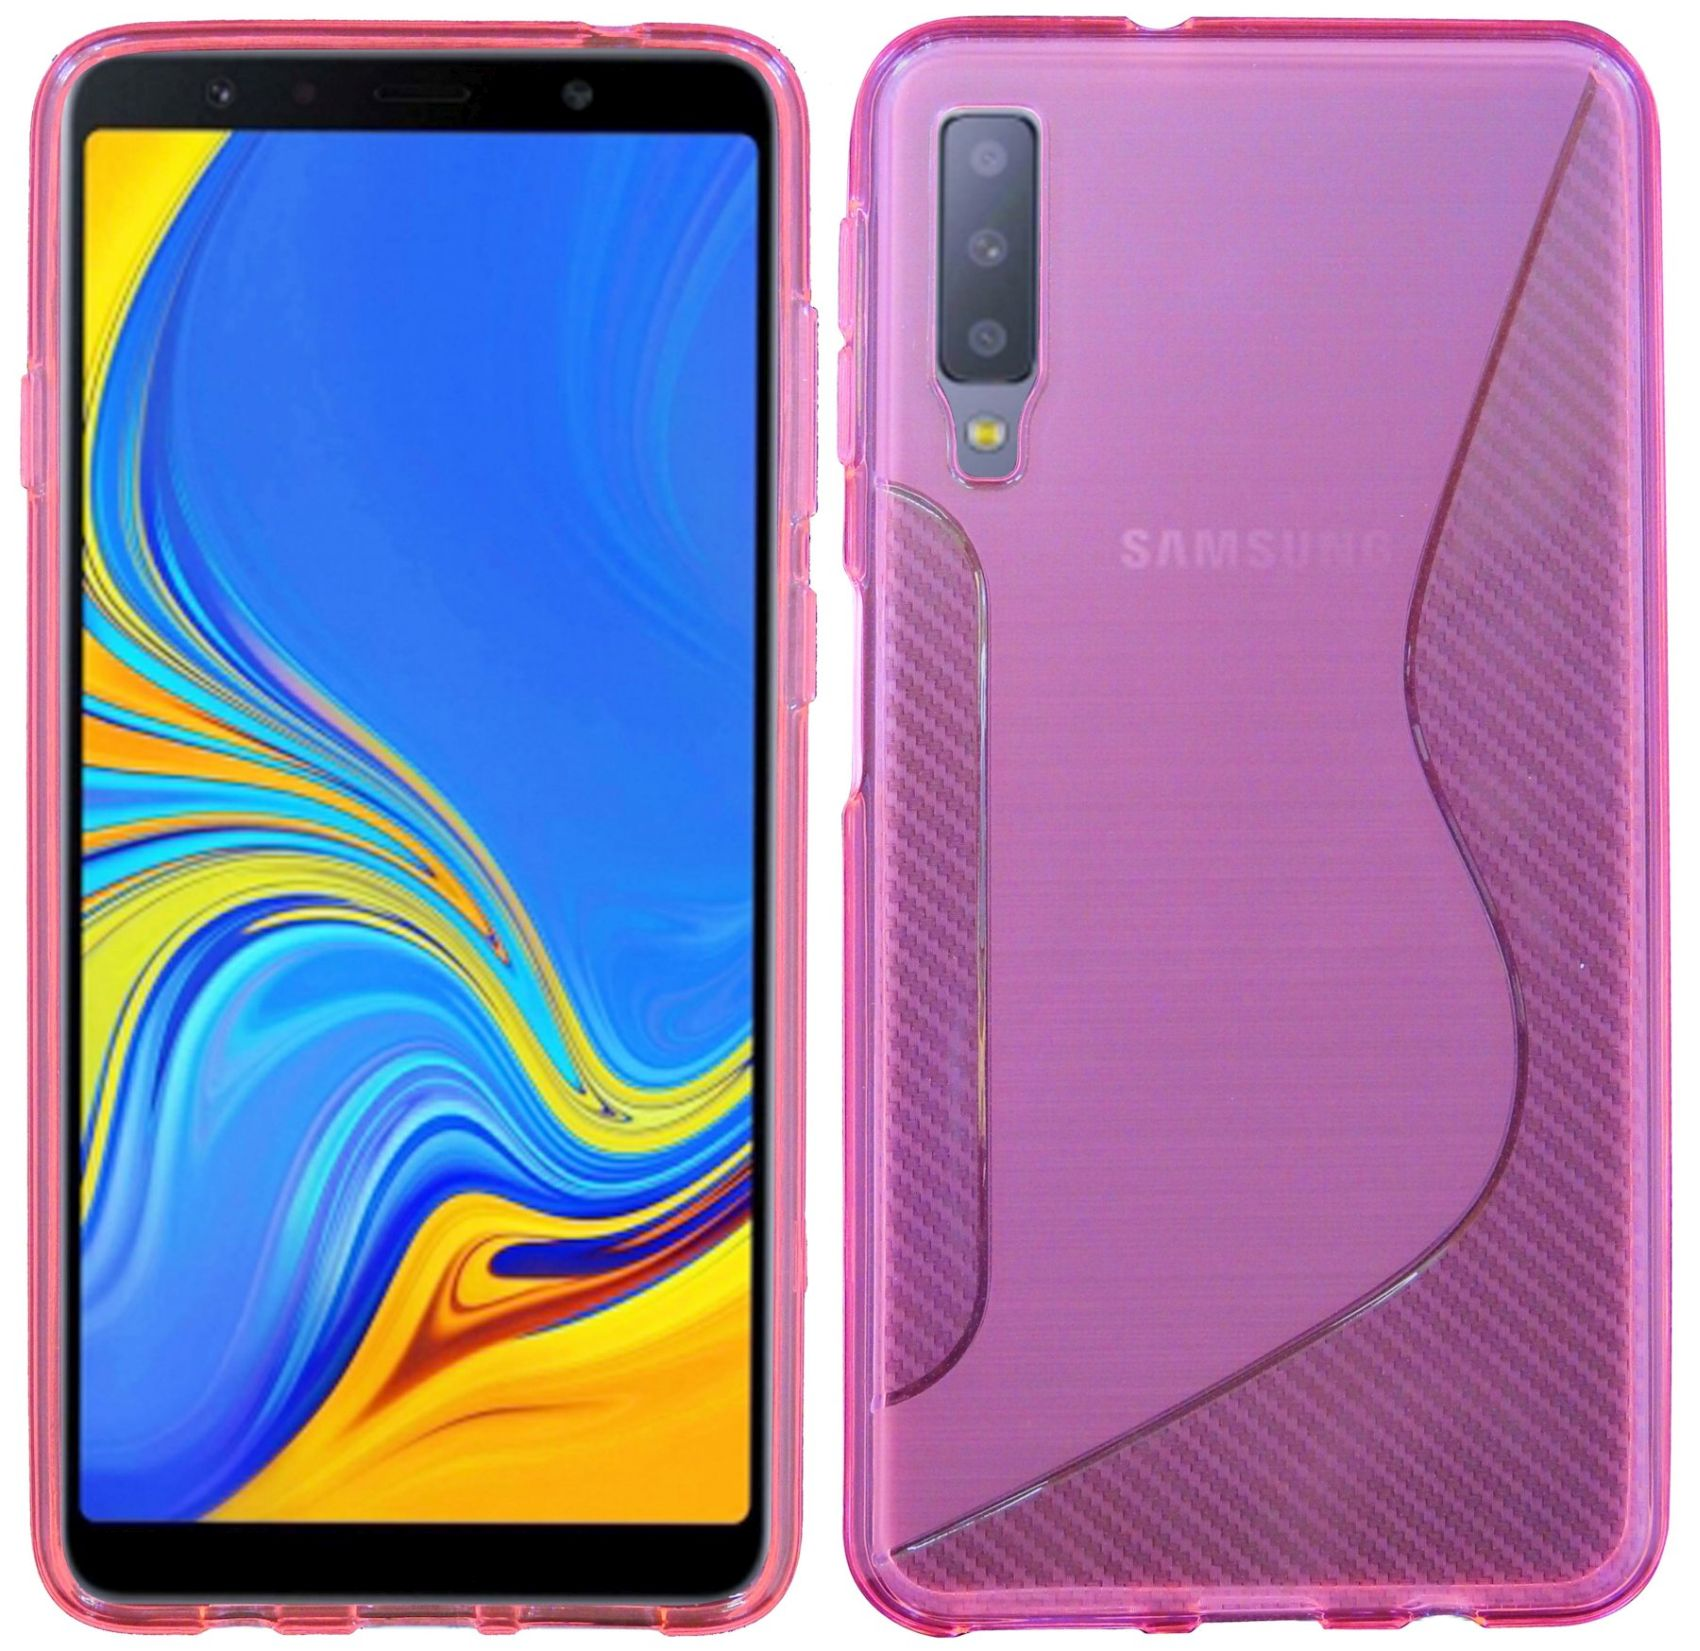 Rosa Galaxy Cover, S-Line 2018, Samsung, A7 Bumper, COFI